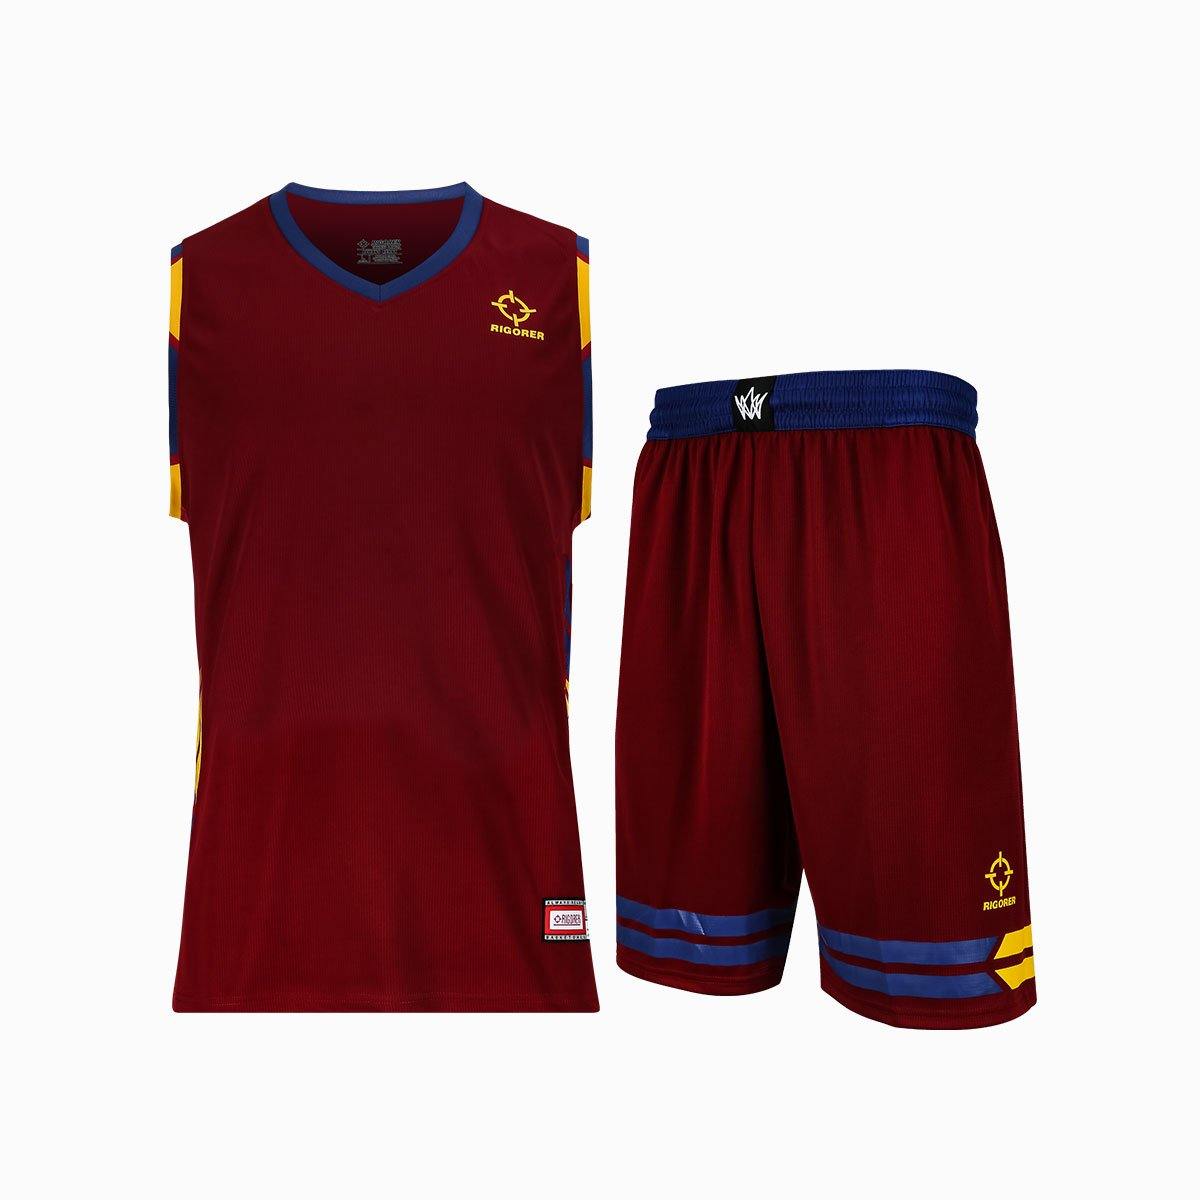 Polyester Men's Sports Wear Basketball Uniform Jersey Set - Rigorer Official Flagship Store